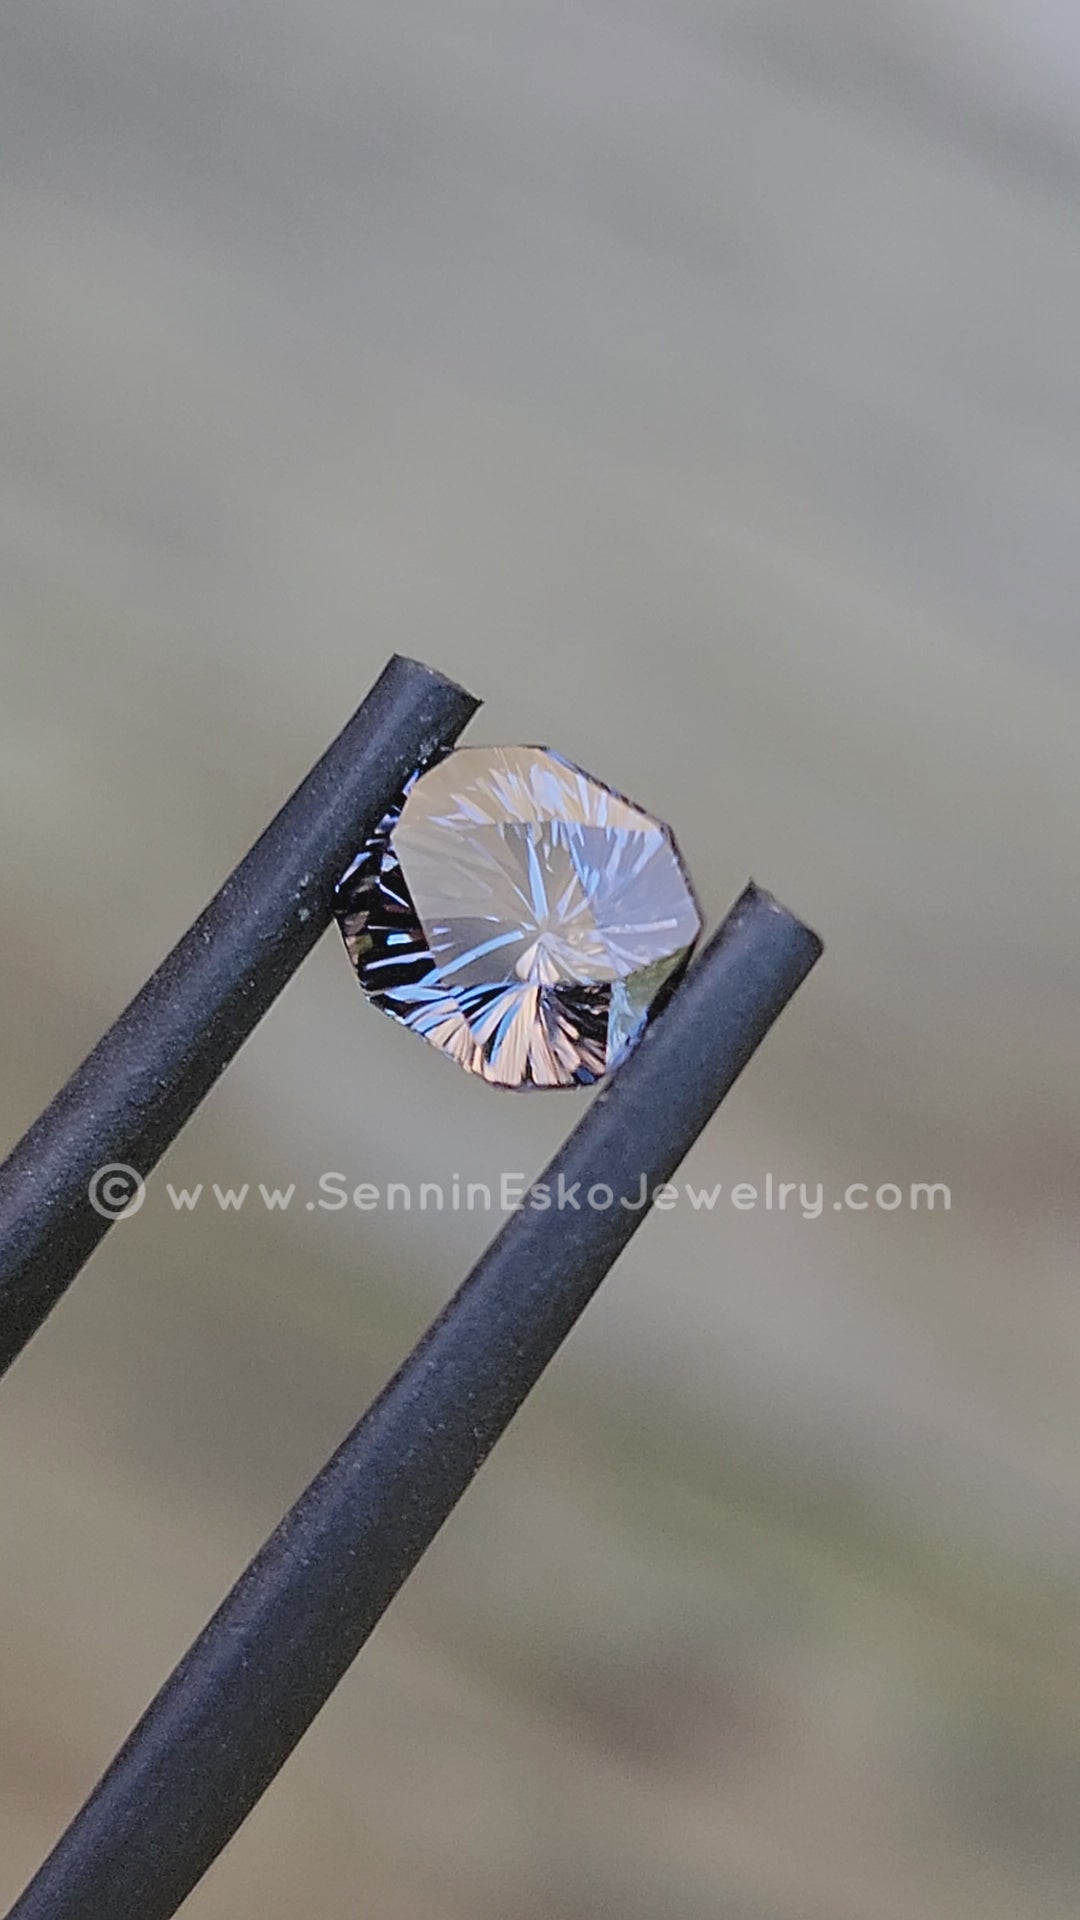 1.2 carat Blue/Gray Spinel Octagon - Fantasy Cut 6.6x5.8mm